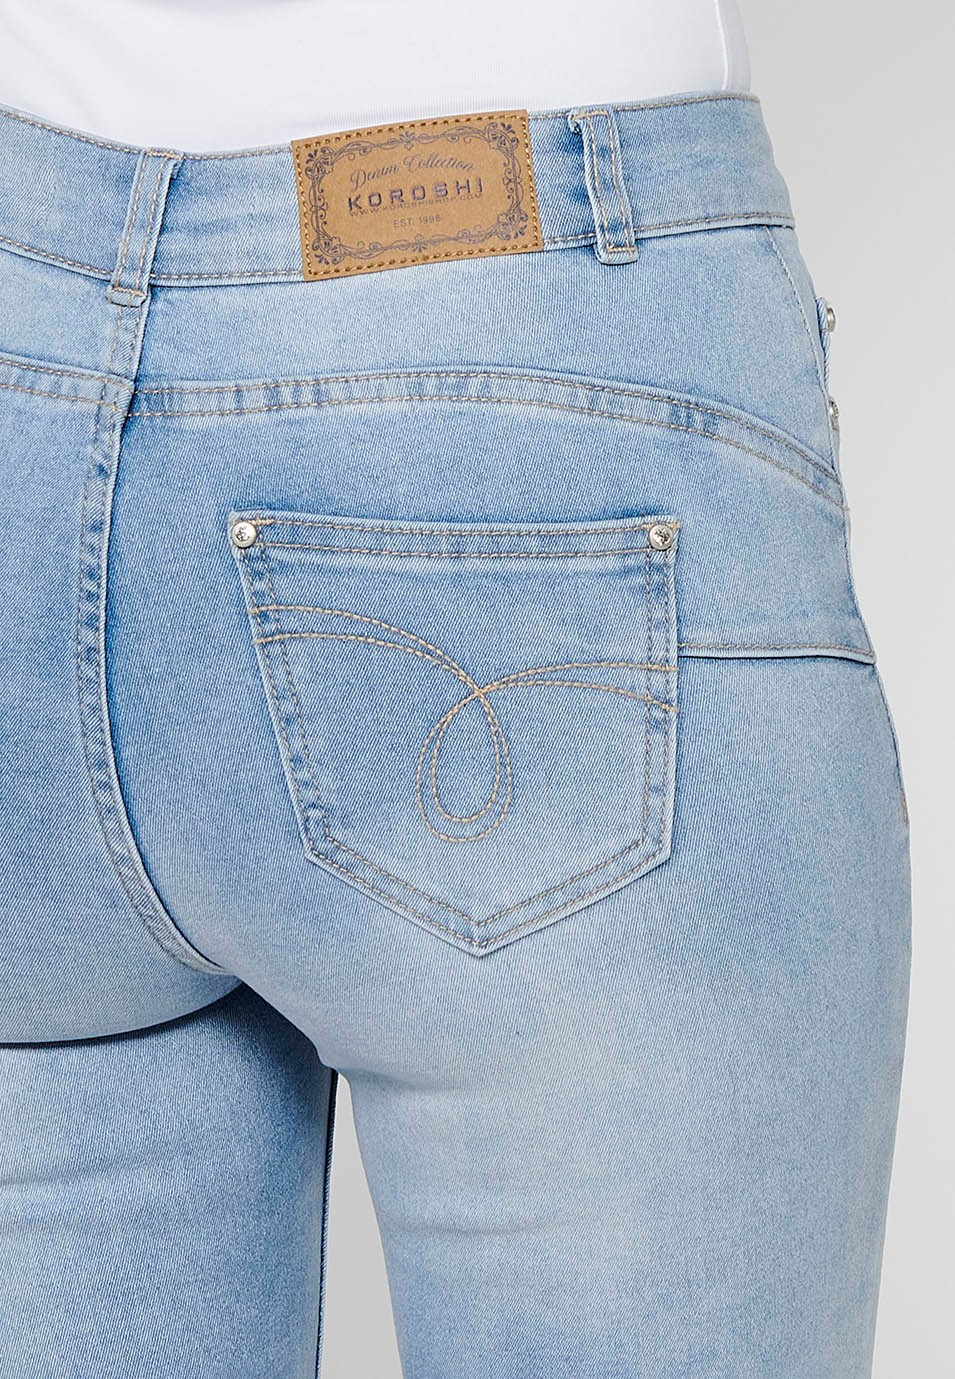 Pantalón largo jeans slim con Cierre delantero con cremallera y Detalles bordados florales de Color Azul claro para Mujer 9